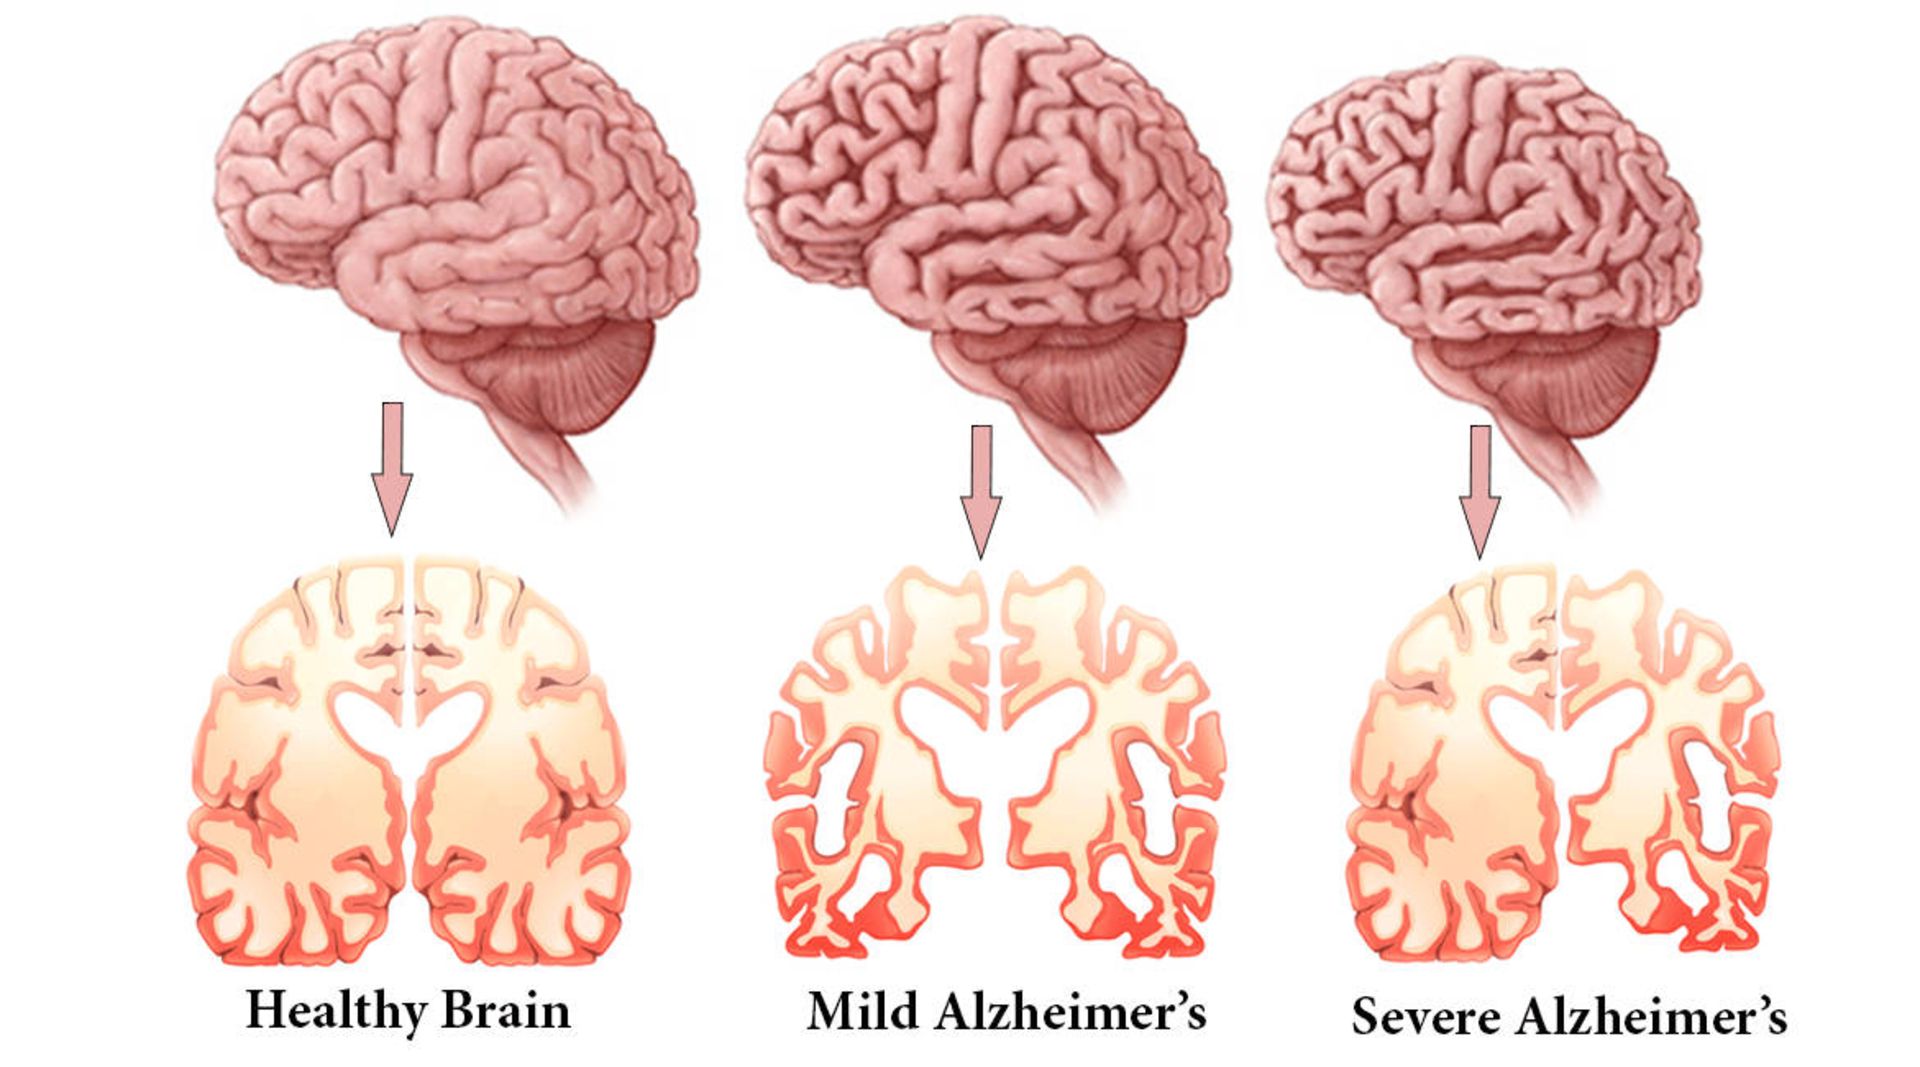 تاثیر آلزایمر روی مغز در مراحل مختلف بیماری / Alzheimer